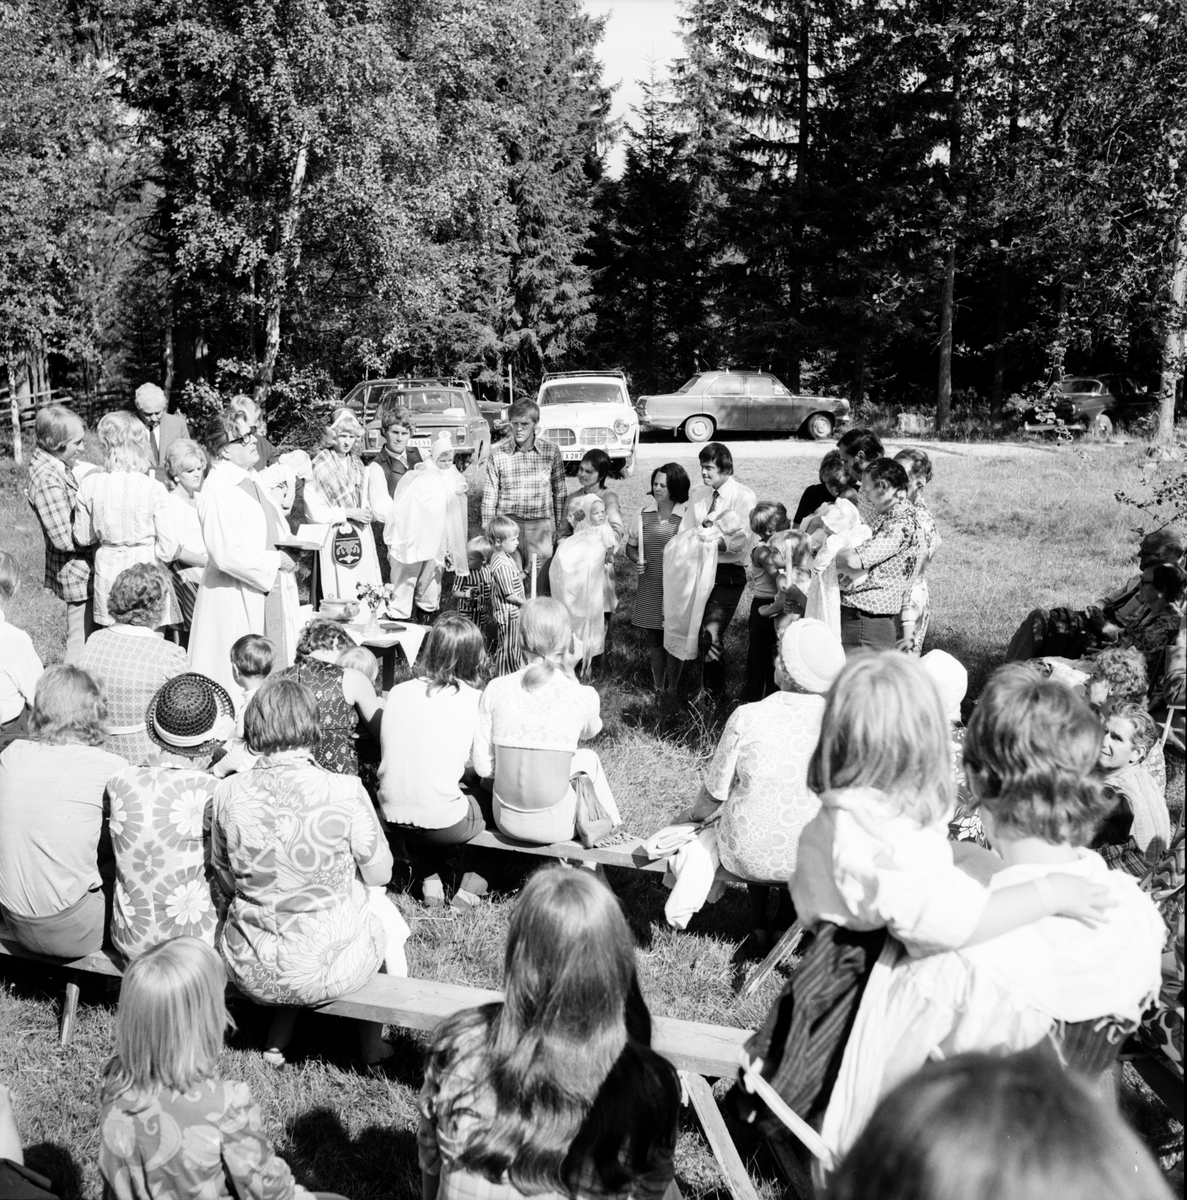 Dopcermoni på Möckelåsen.
Juli 1972